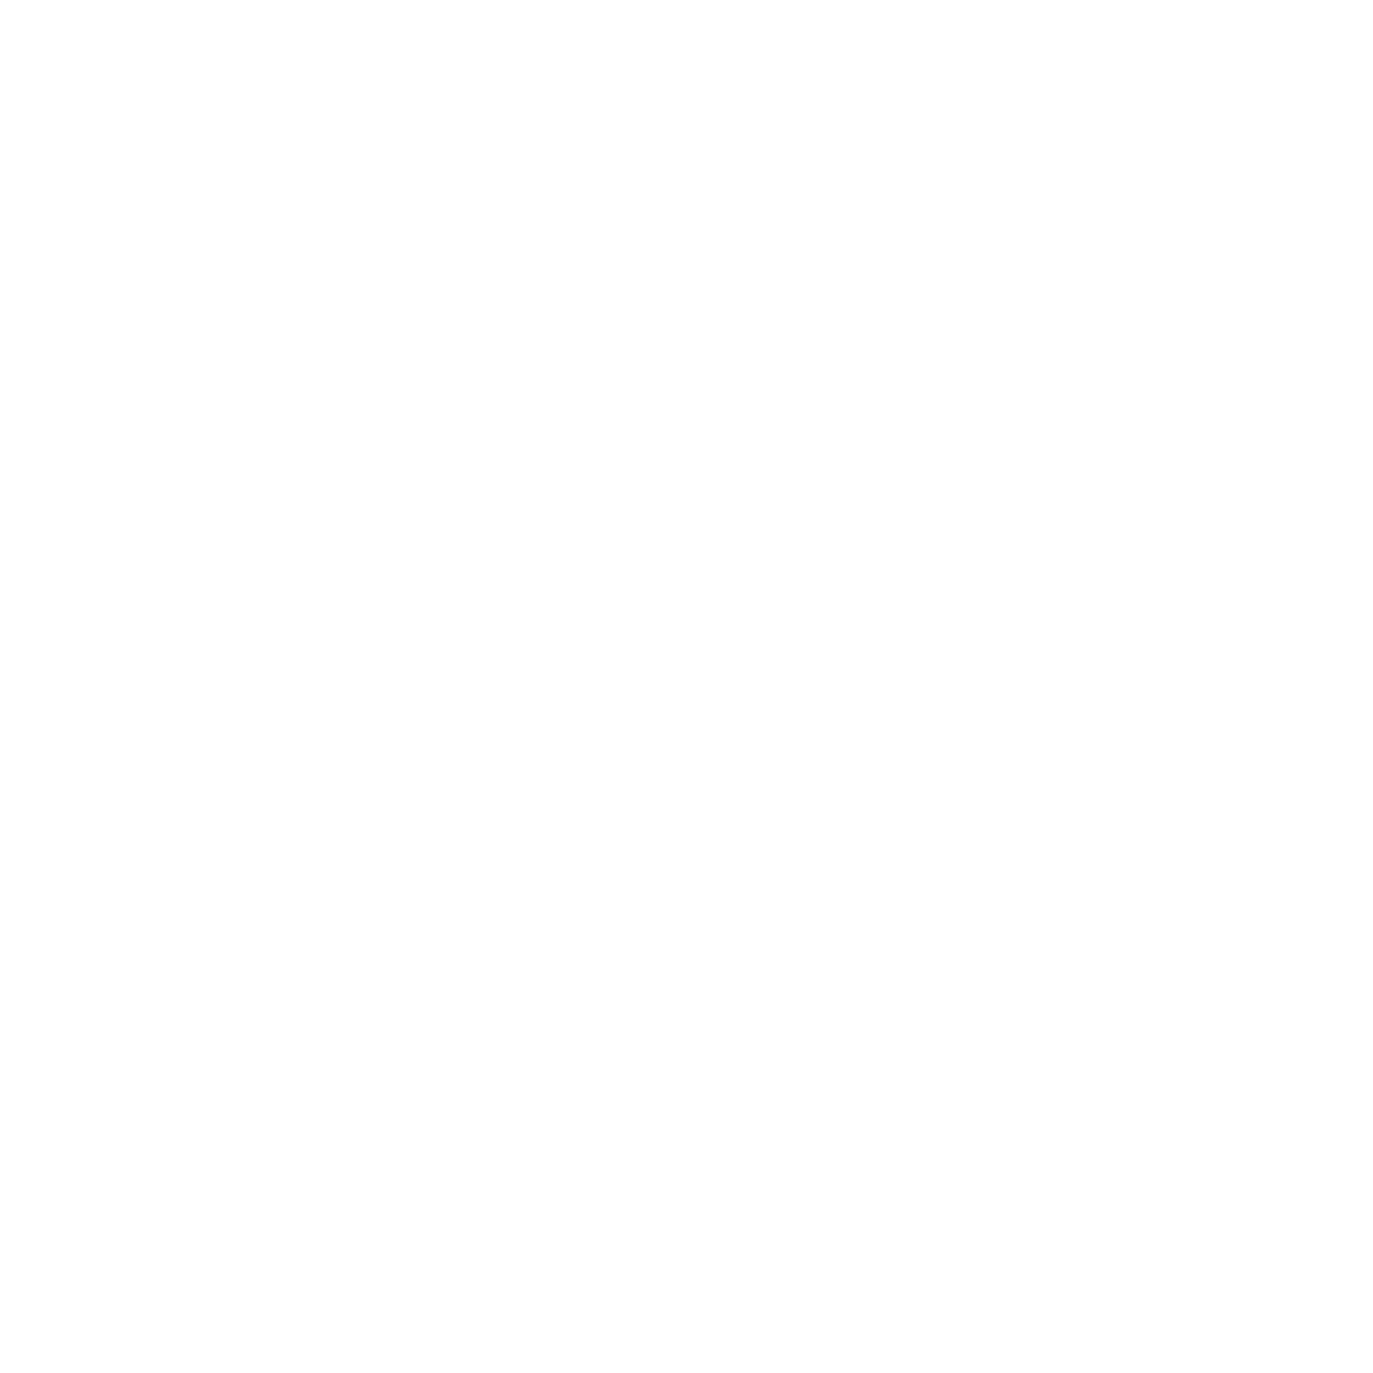 imiwinr - HacksawGaming